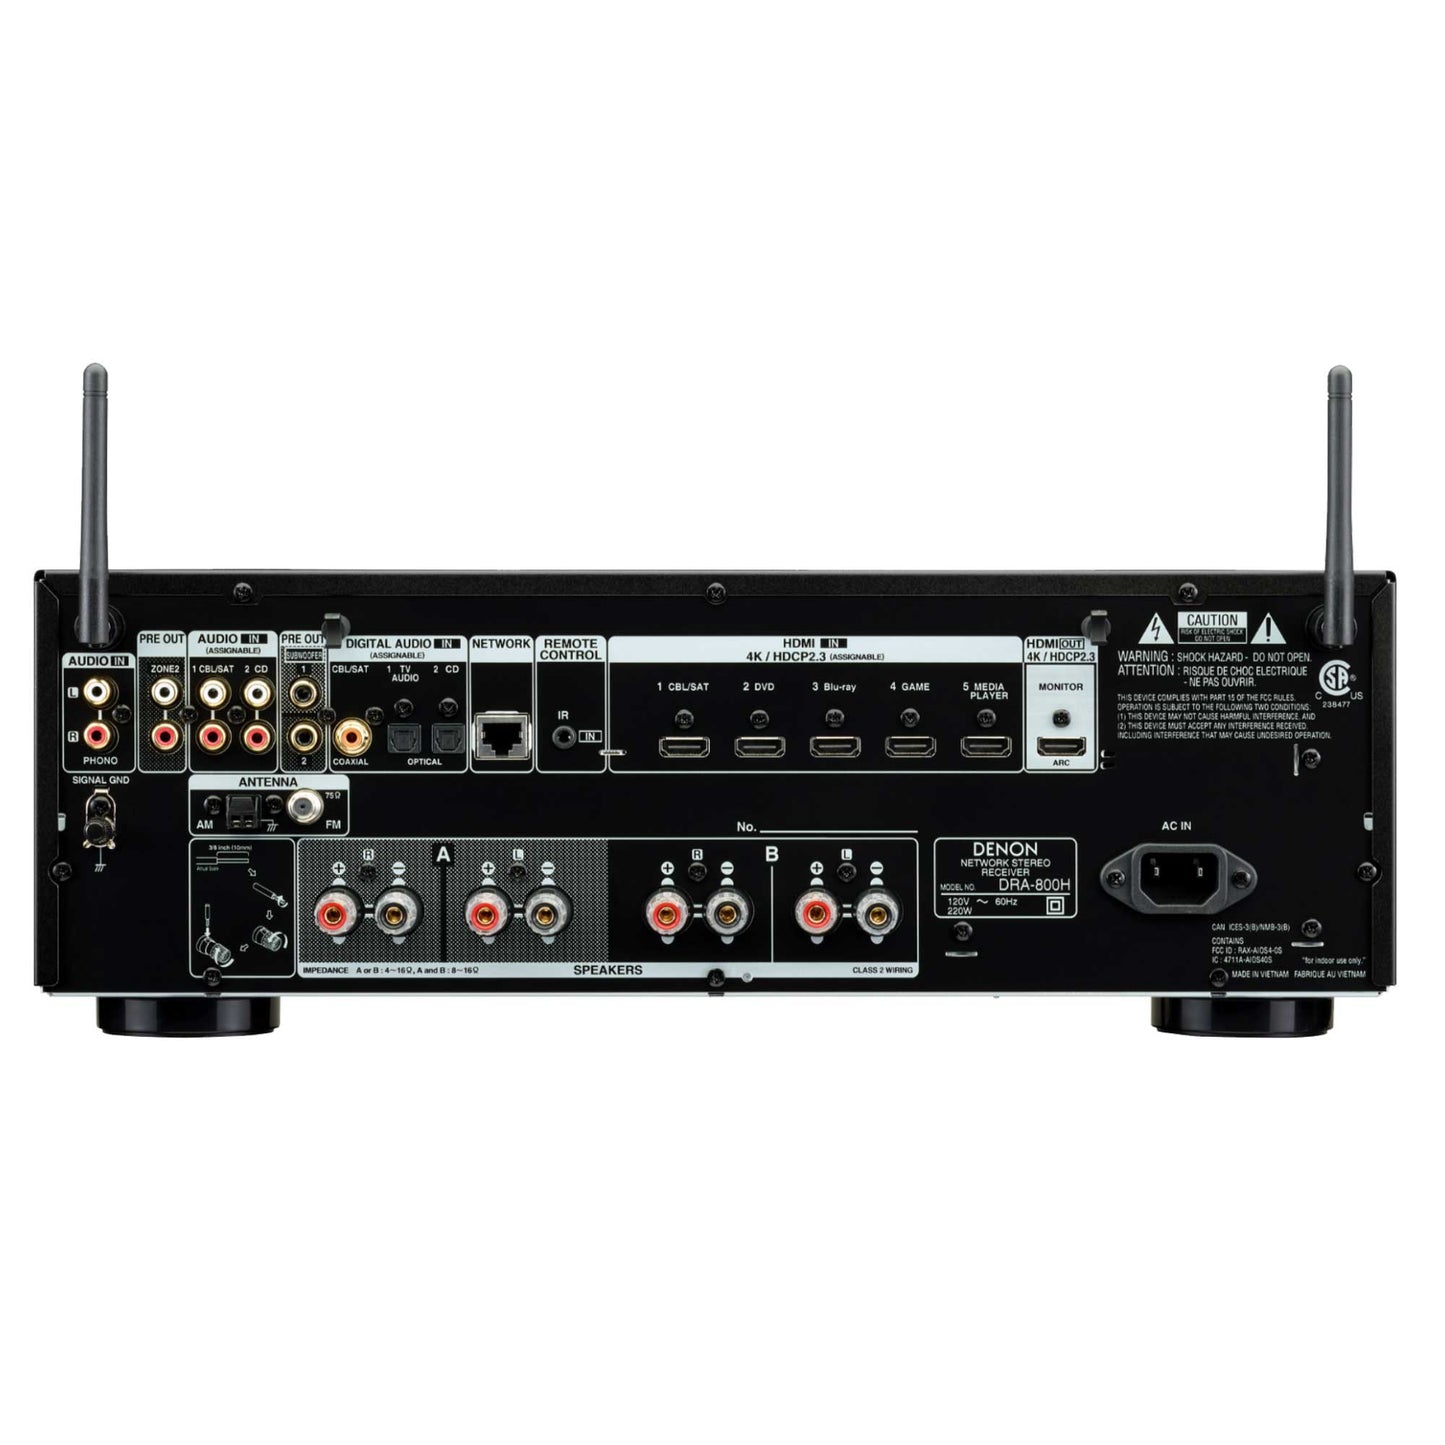 Denon DRA-800H Stereo Network Receiver